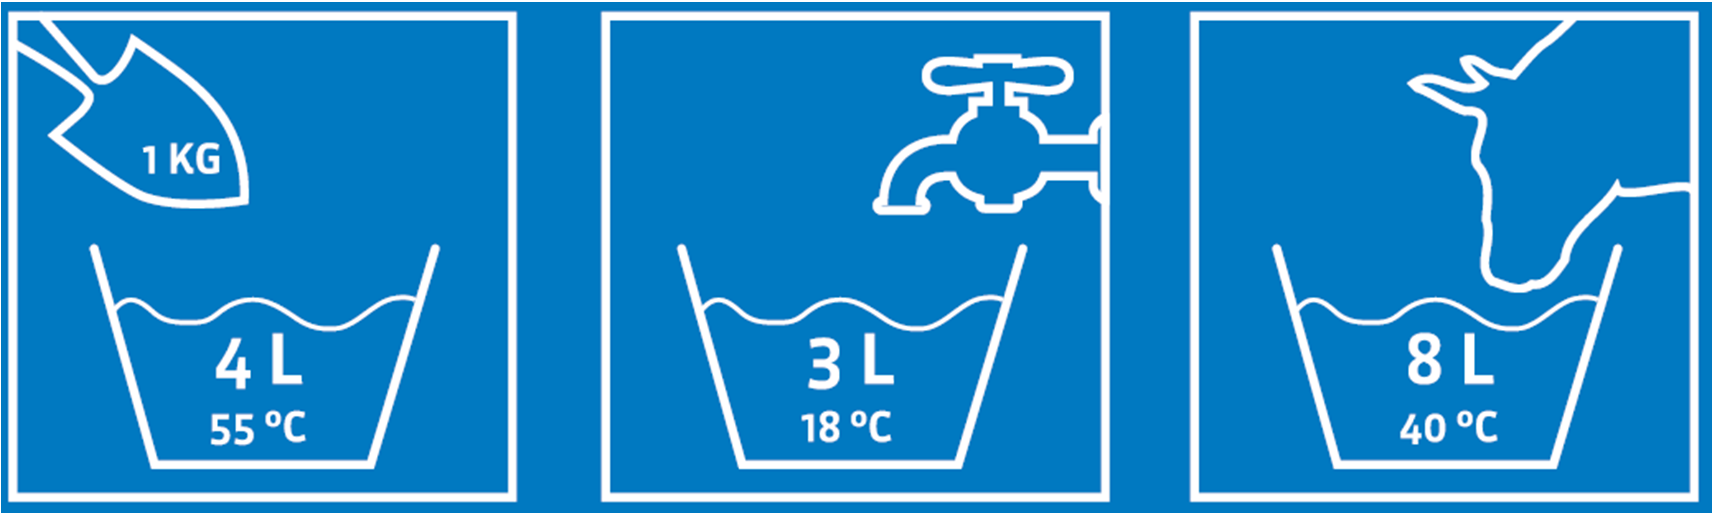 Melk aanmaken 7 liter water + 1 kg poeder = 8 liter Opfokmelk (15 g/l) Consistente temperatuur Niet meer dan l per voerbeurt gedurende de